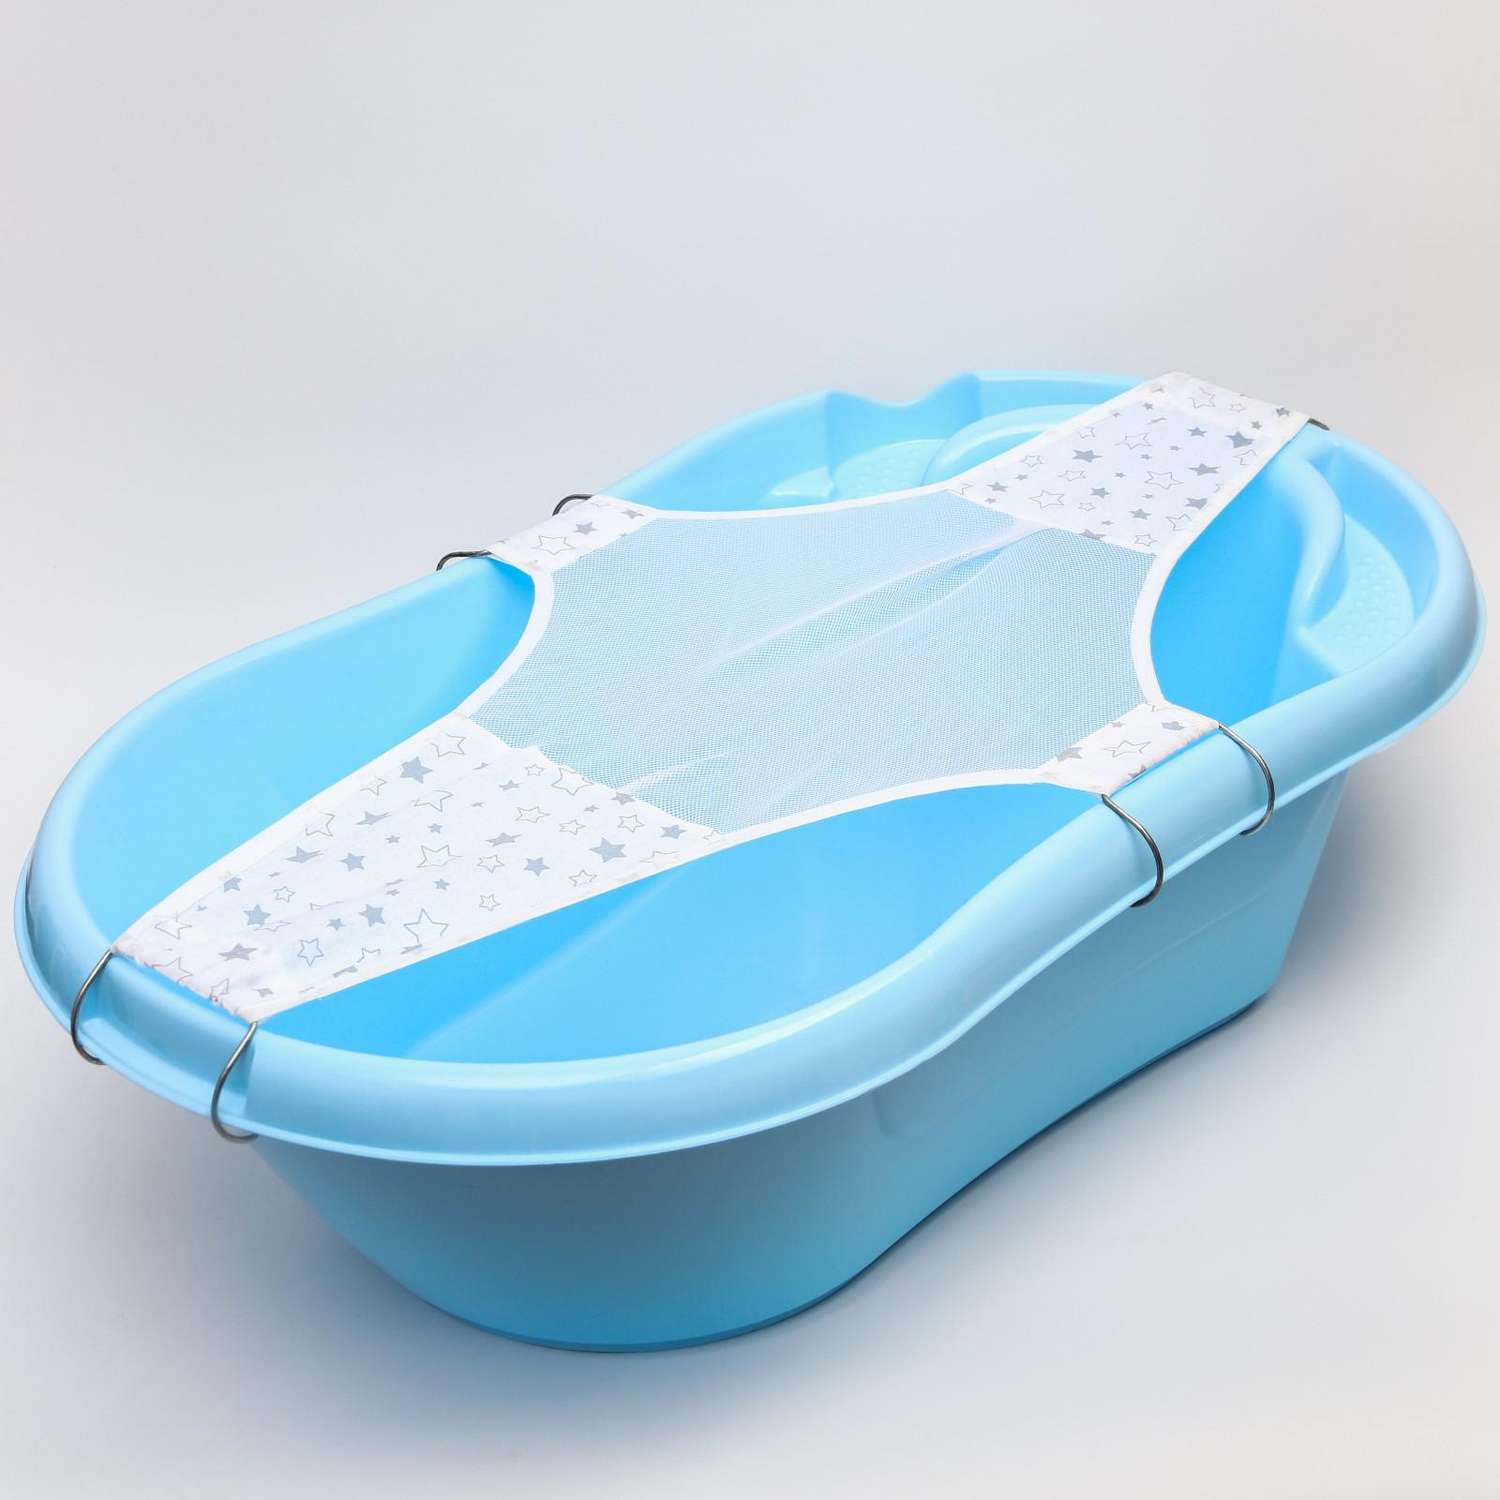 Гамак Sima-Land для купания новорожденных сетка для ванночки детской «Куп-куп» 80 cм Premium цвет белый - фото 1